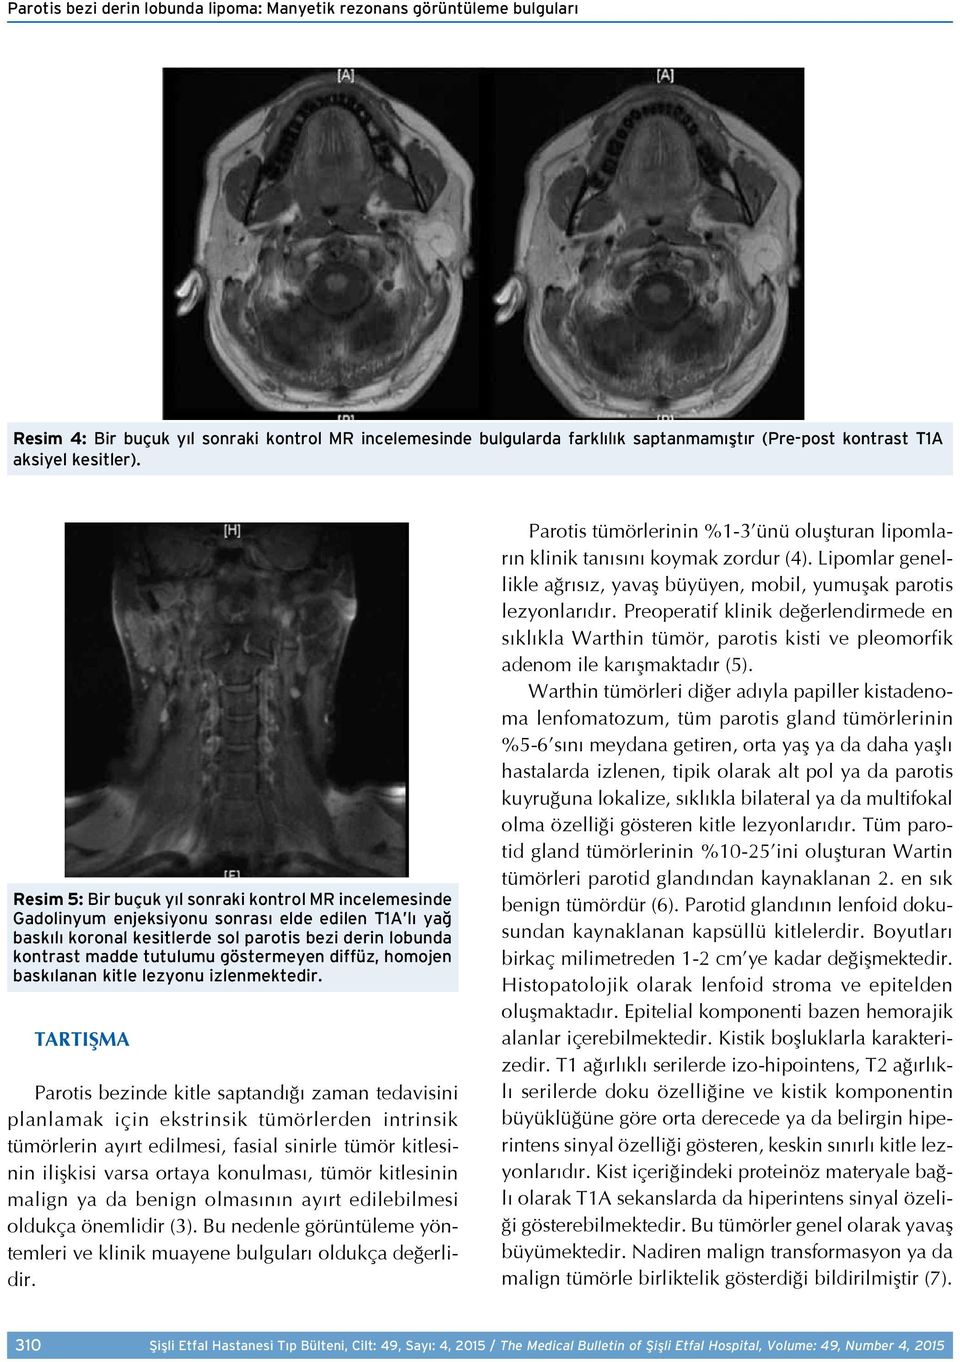 Resim 5: Bir buçuk yıl sonraki kontrol MR incelemesinde Gadolinyum enjeksiyonu sonrası elde edilen T1A lı yağ baskılı koronal kesitlerde sol parotis bezi derin lobunda kontrast madde tutulumu